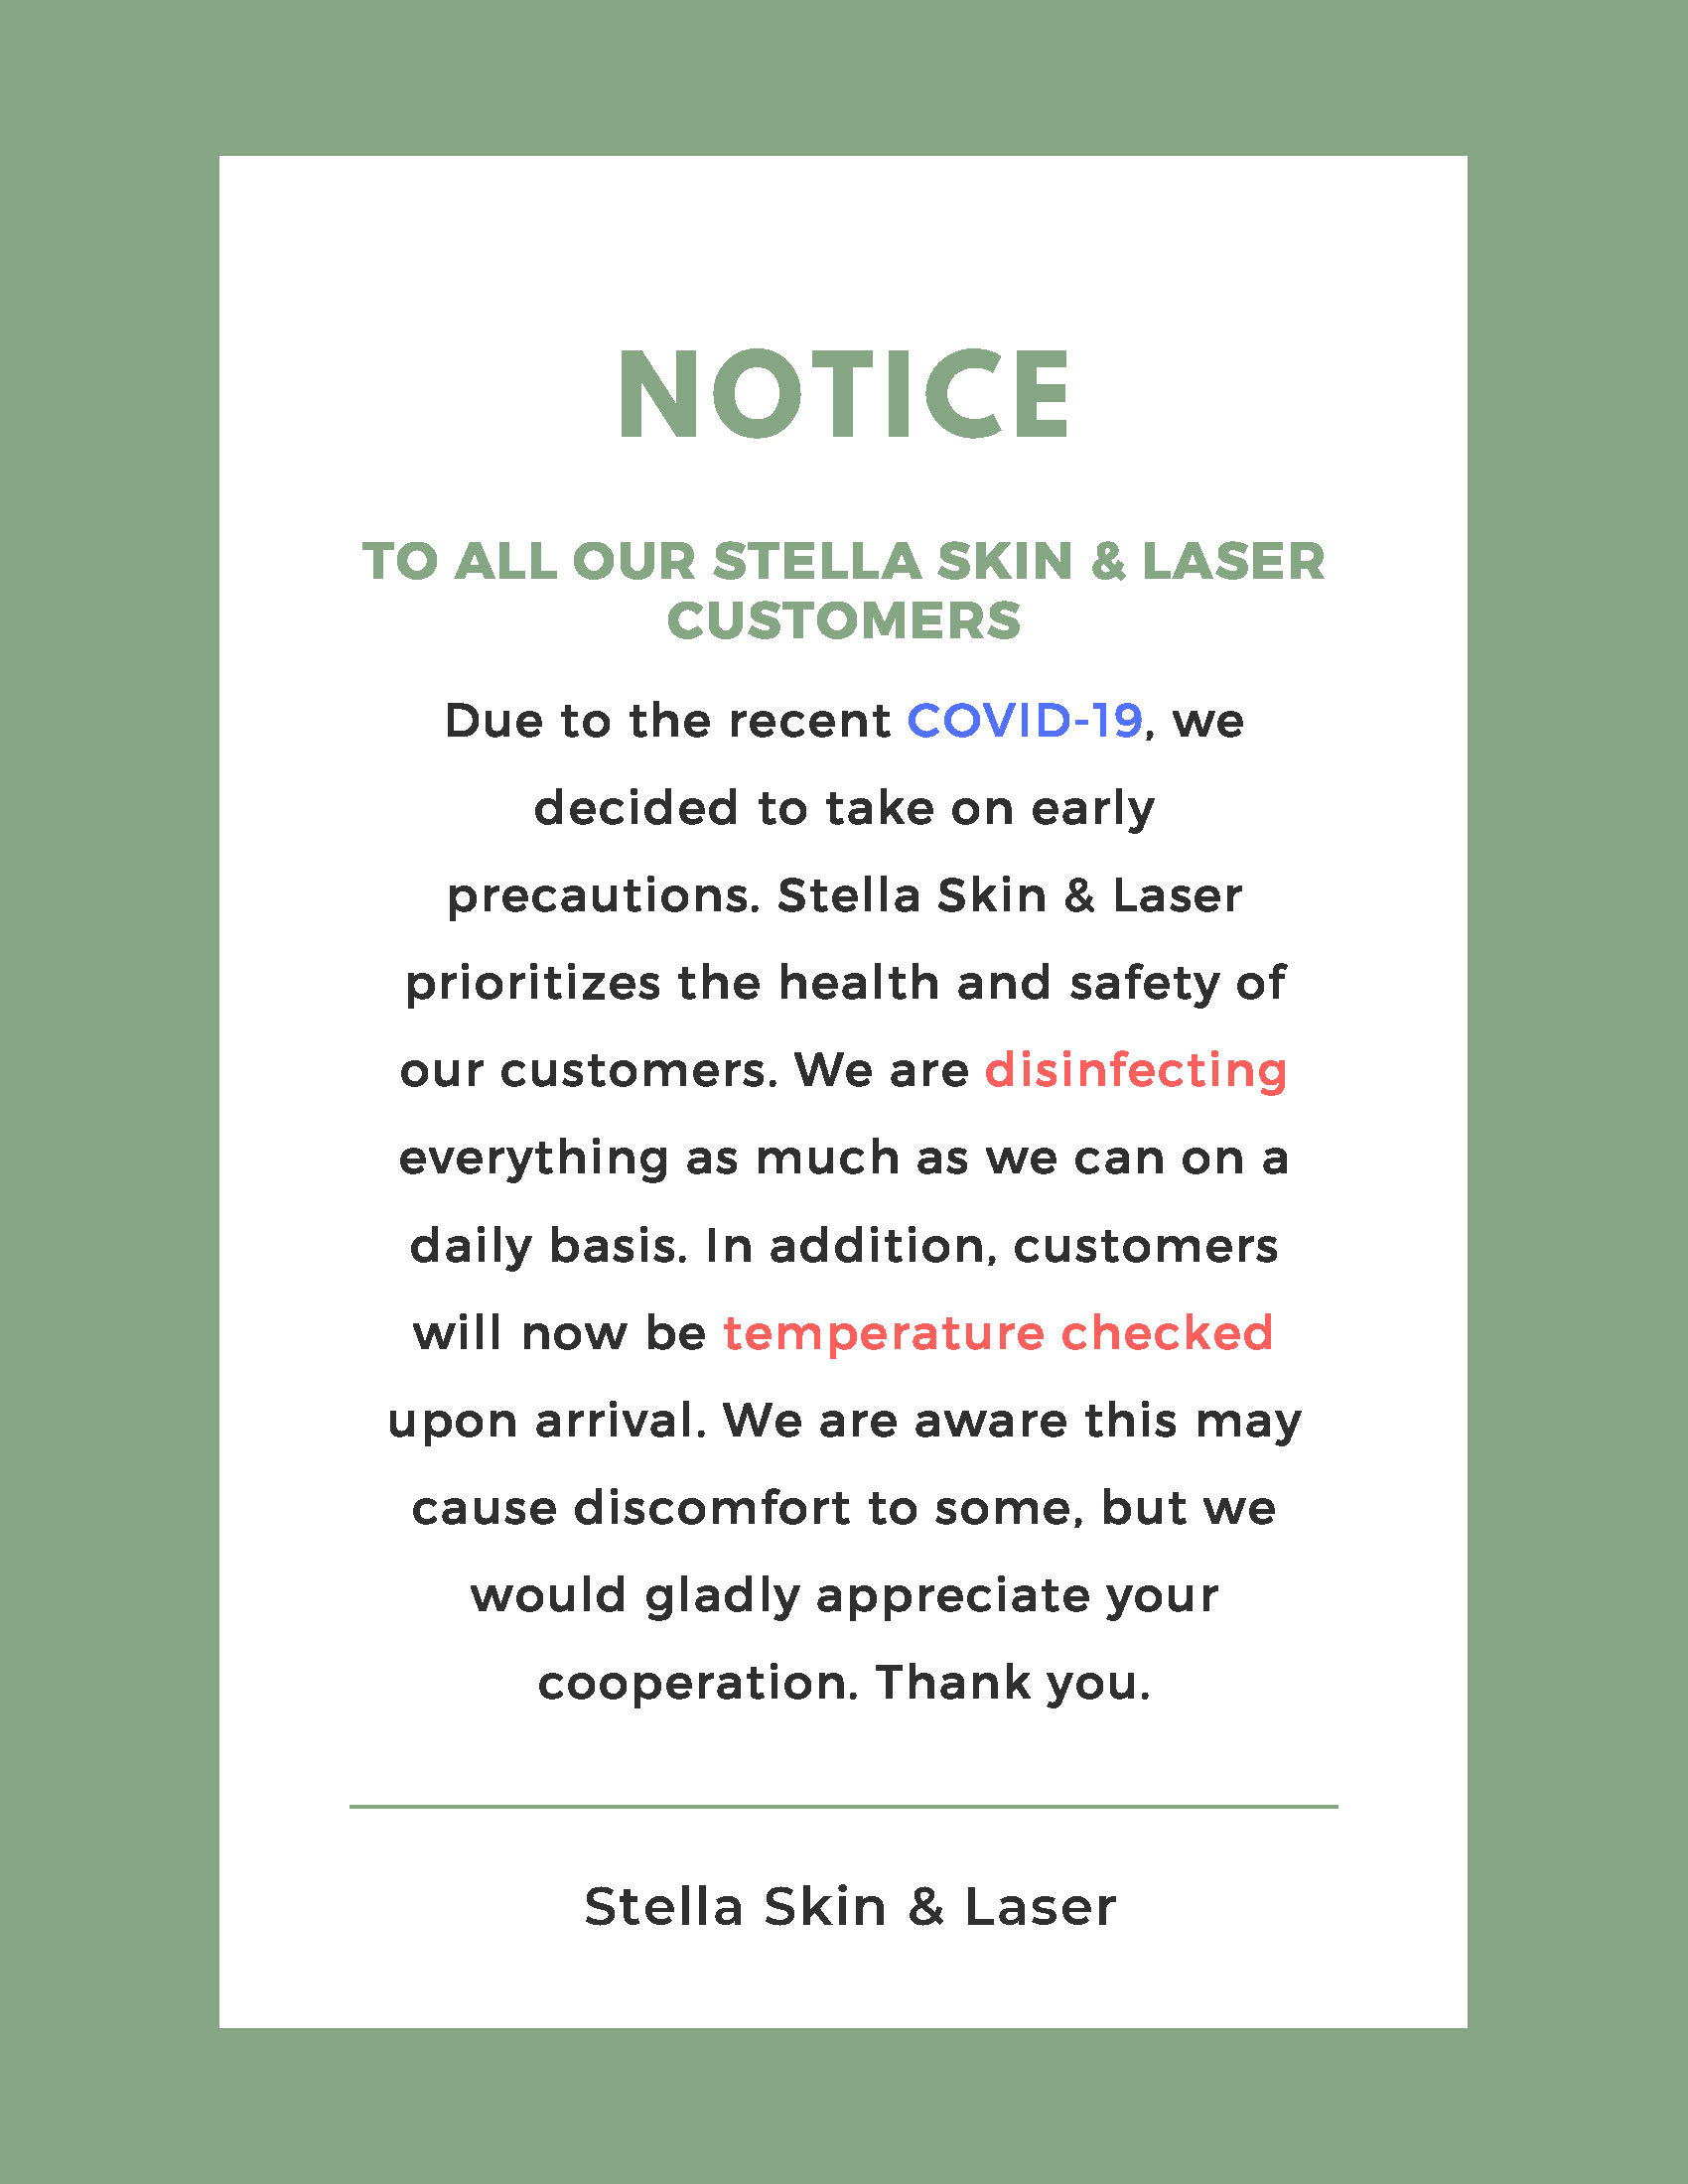 Stella Skin & Laser Photo